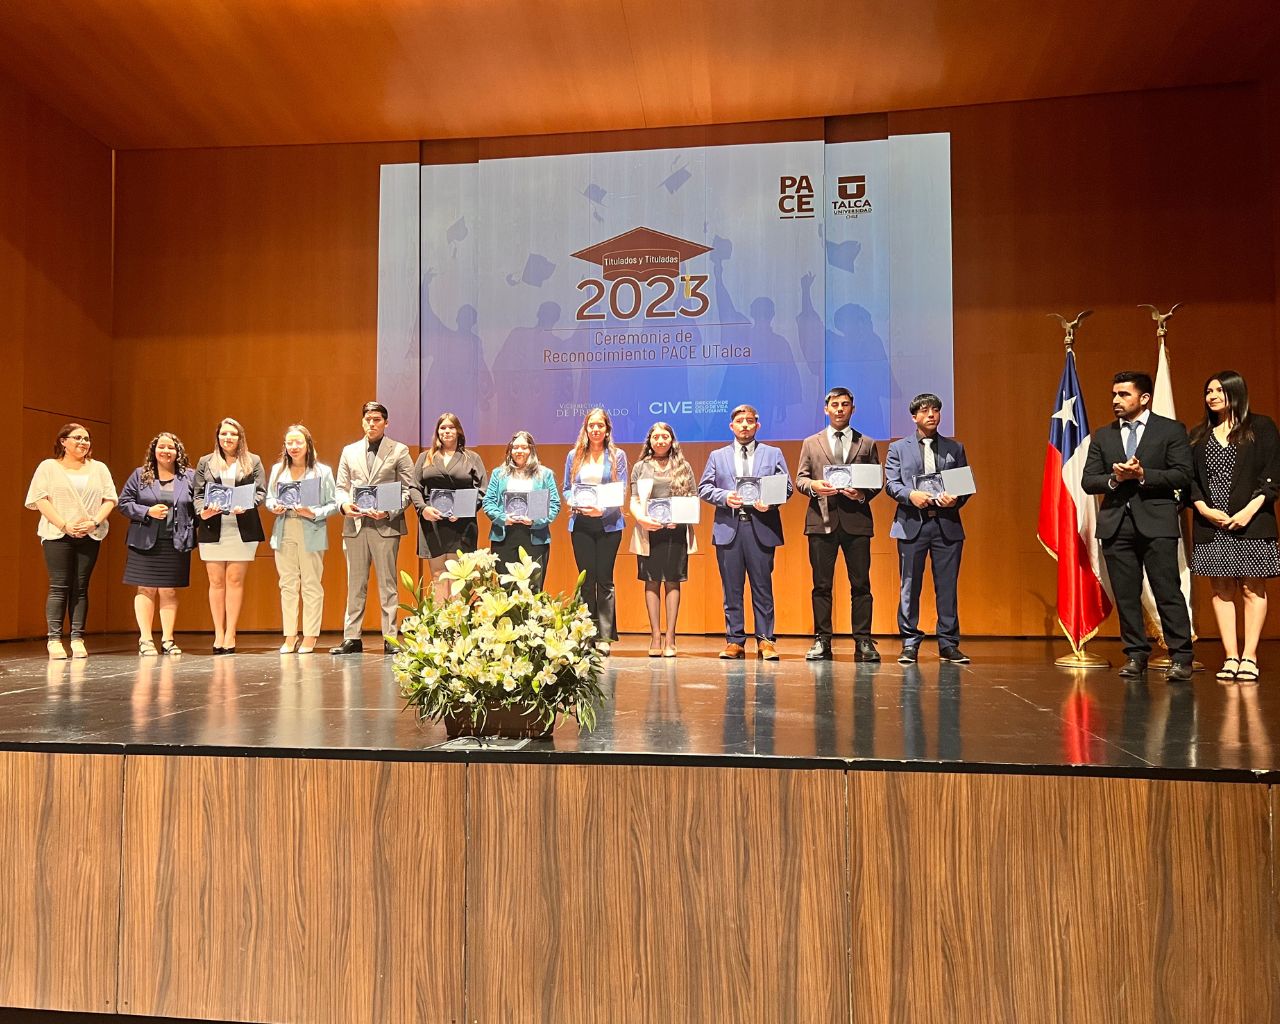 Titulados/as del Programa PACE UTalca recibieron premio por su esfuerzo 